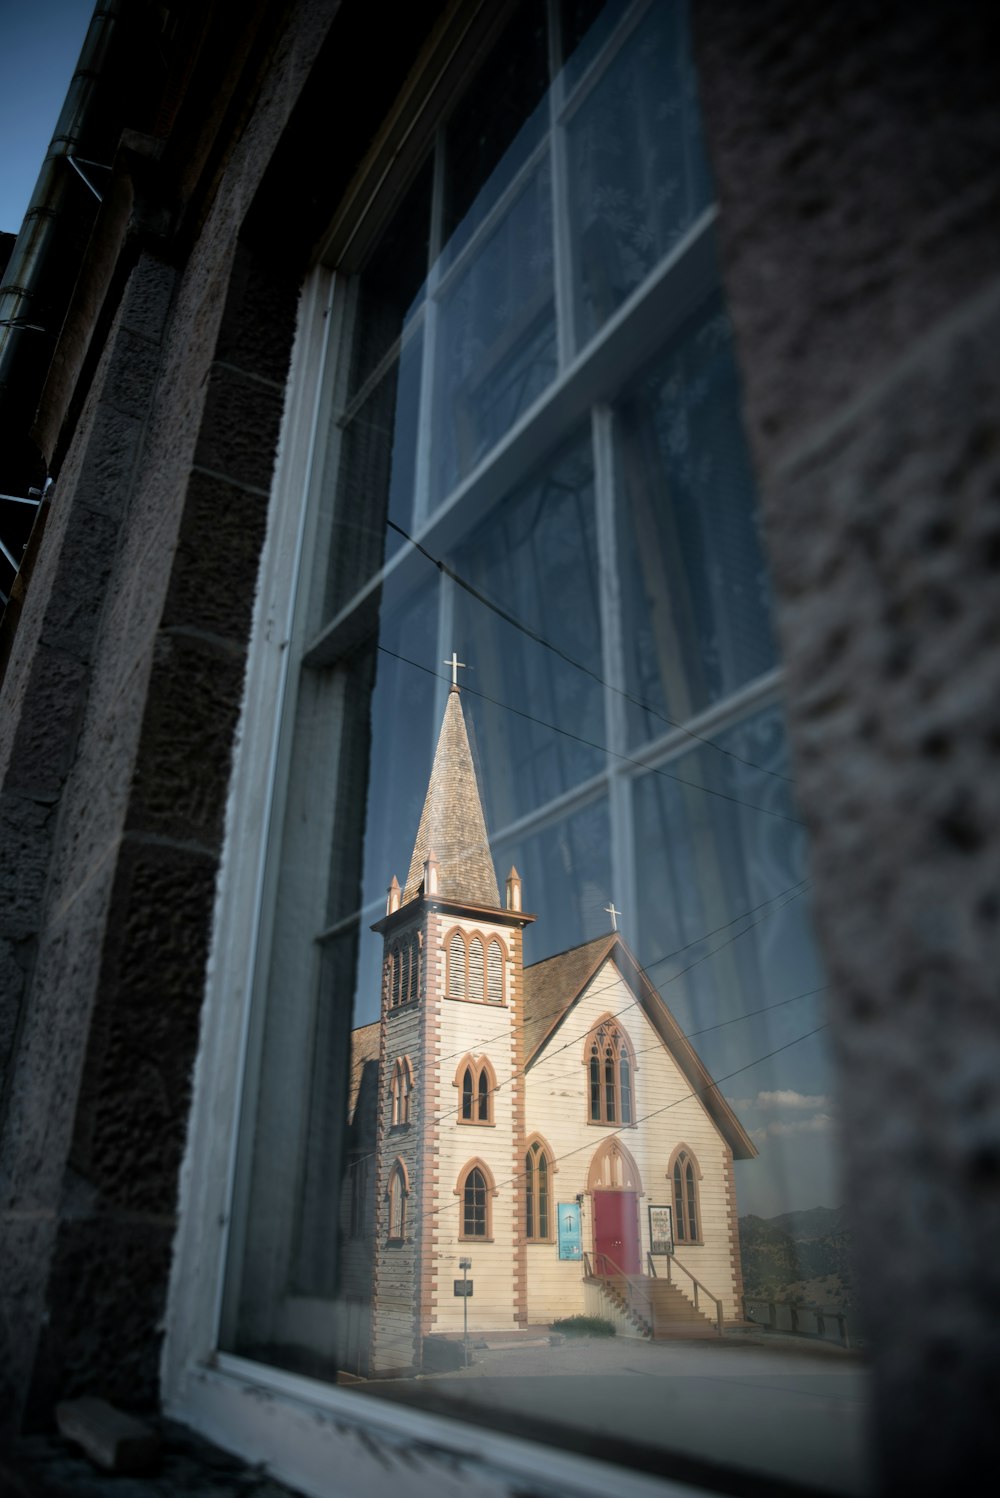 A church viewed through a window.